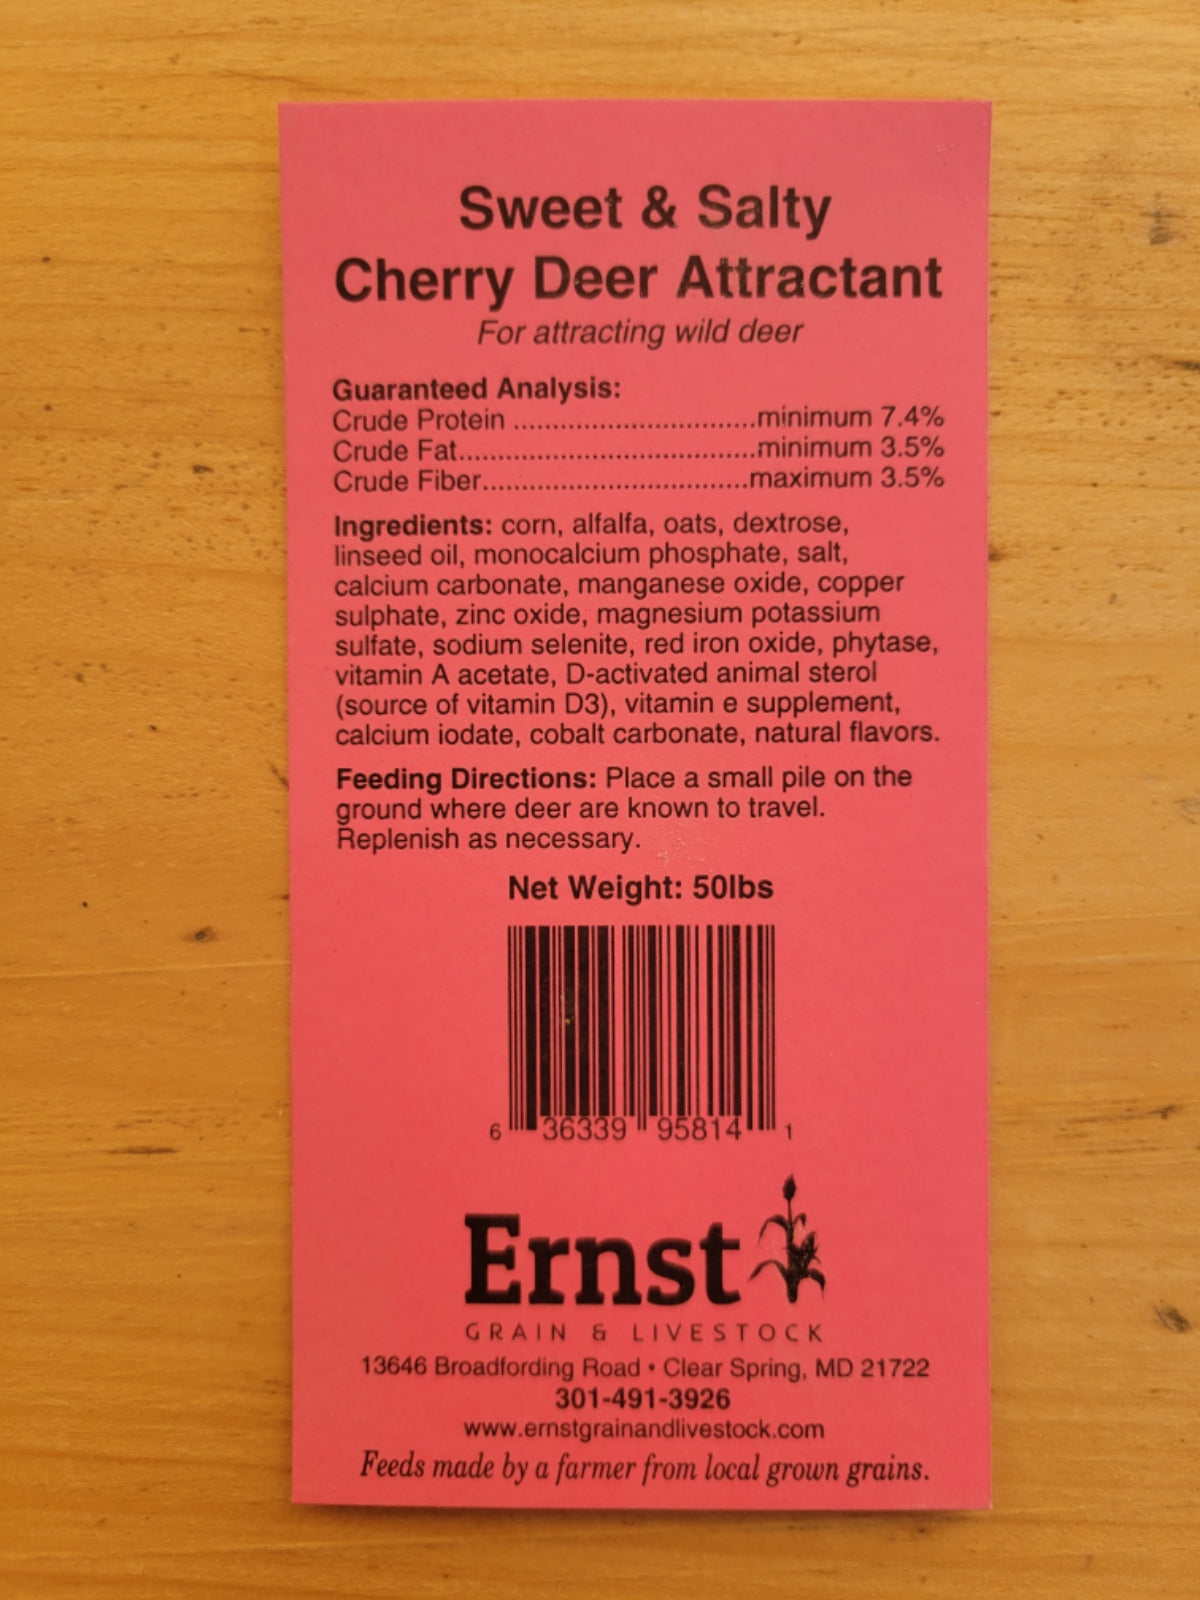 Ernst Grain’s Sweet & Salty Cherry Deer Attractant